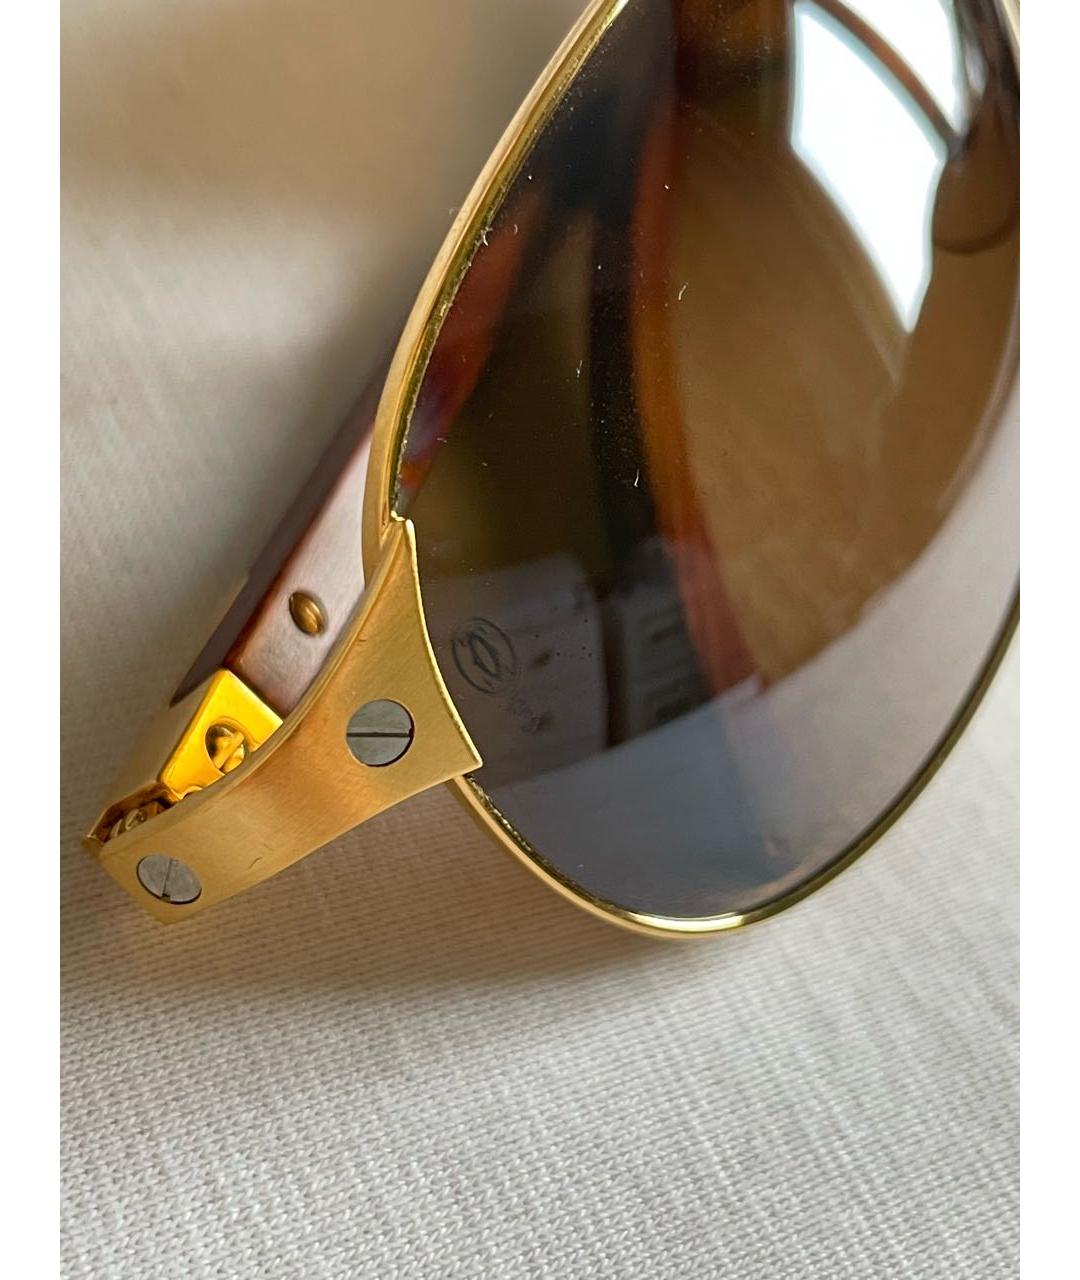 CARTIER Золотые металлические солнцезащитные очки, фото 3